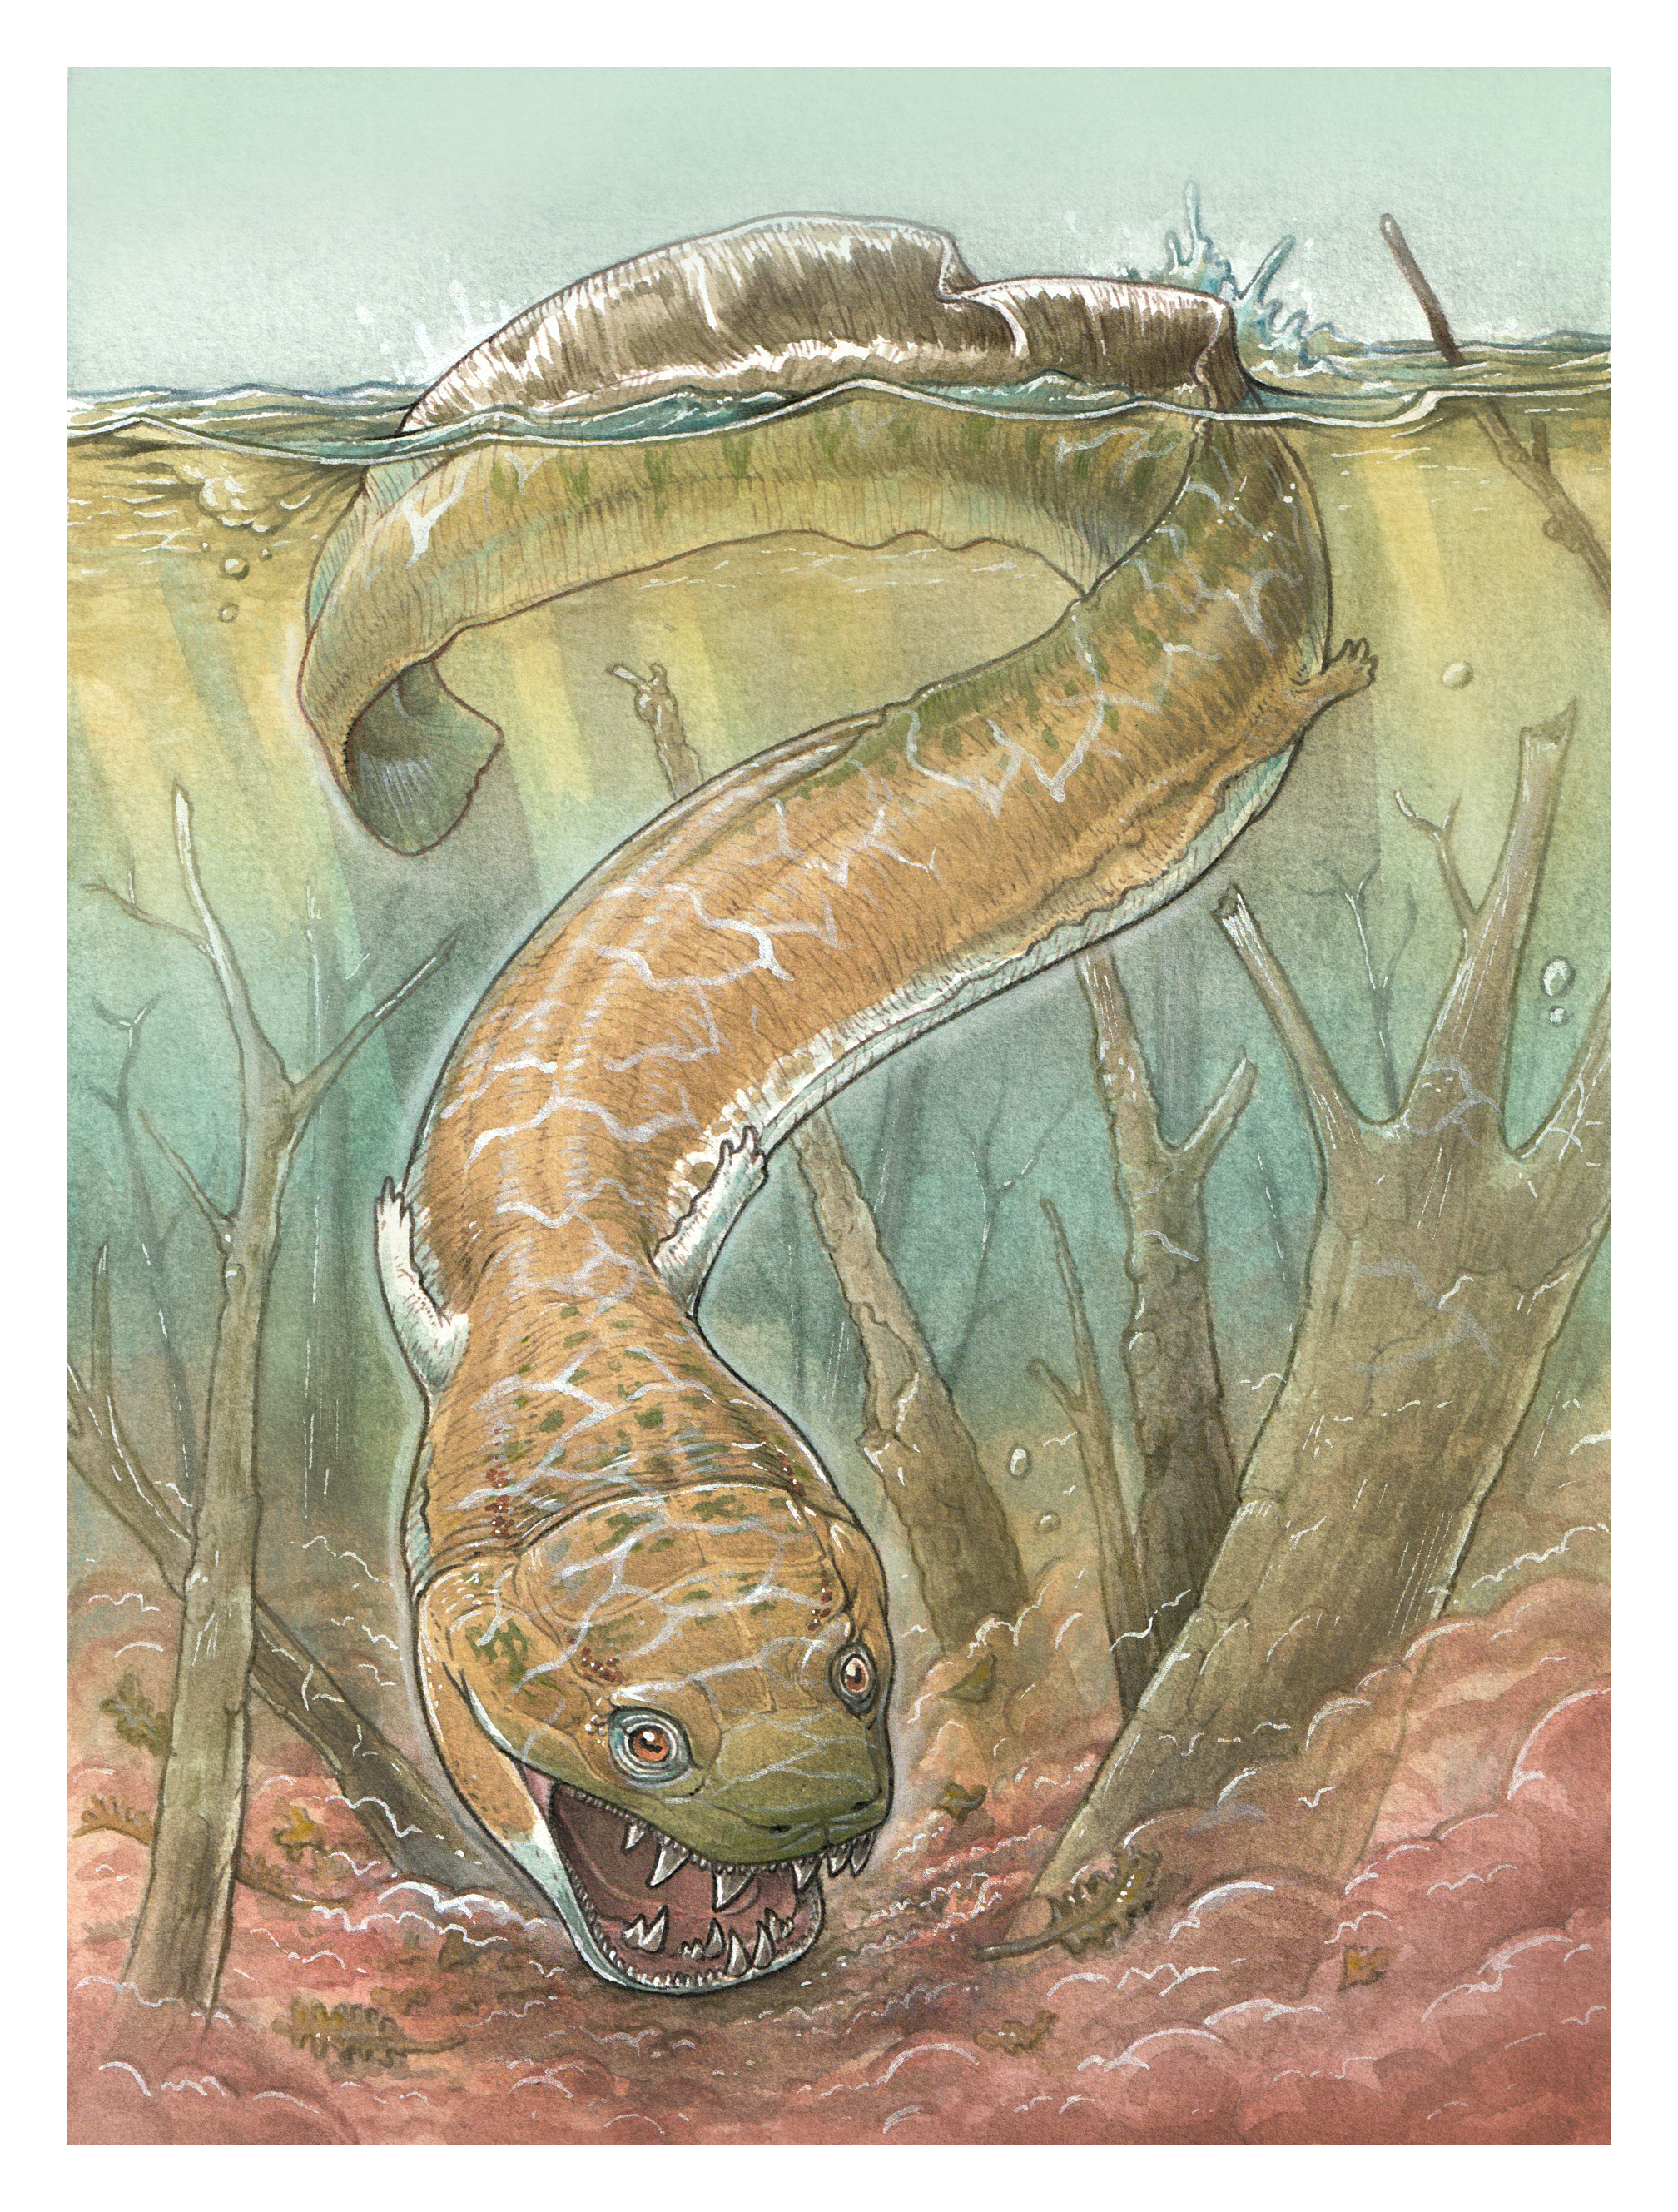 Representação artística de um animal subaquático parecido com uma enguia